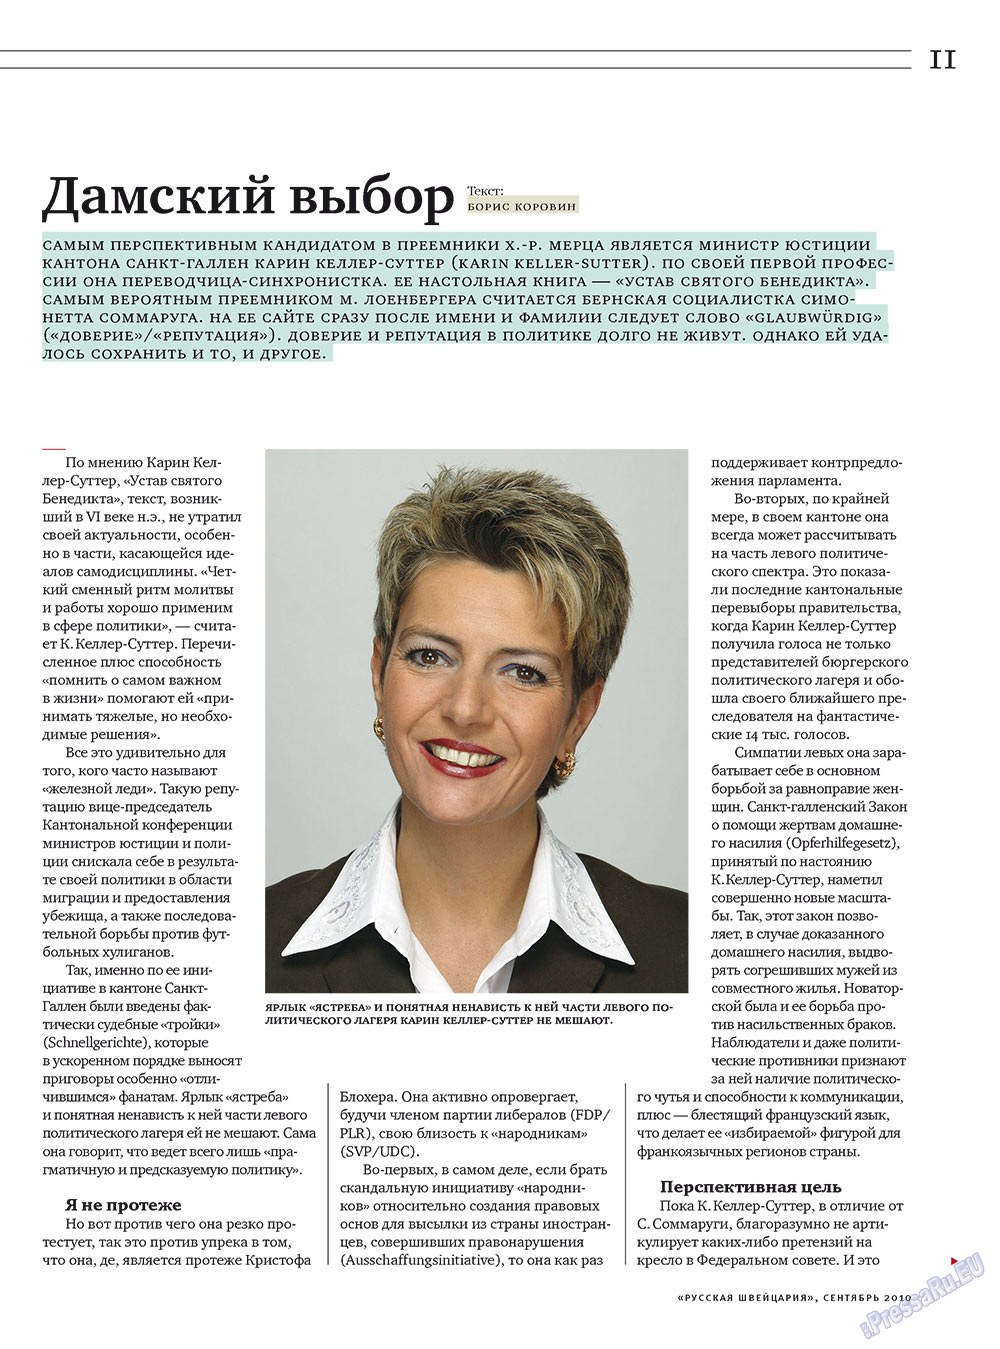 Русская Швейцария, журнал. 2010 №7 стр.11